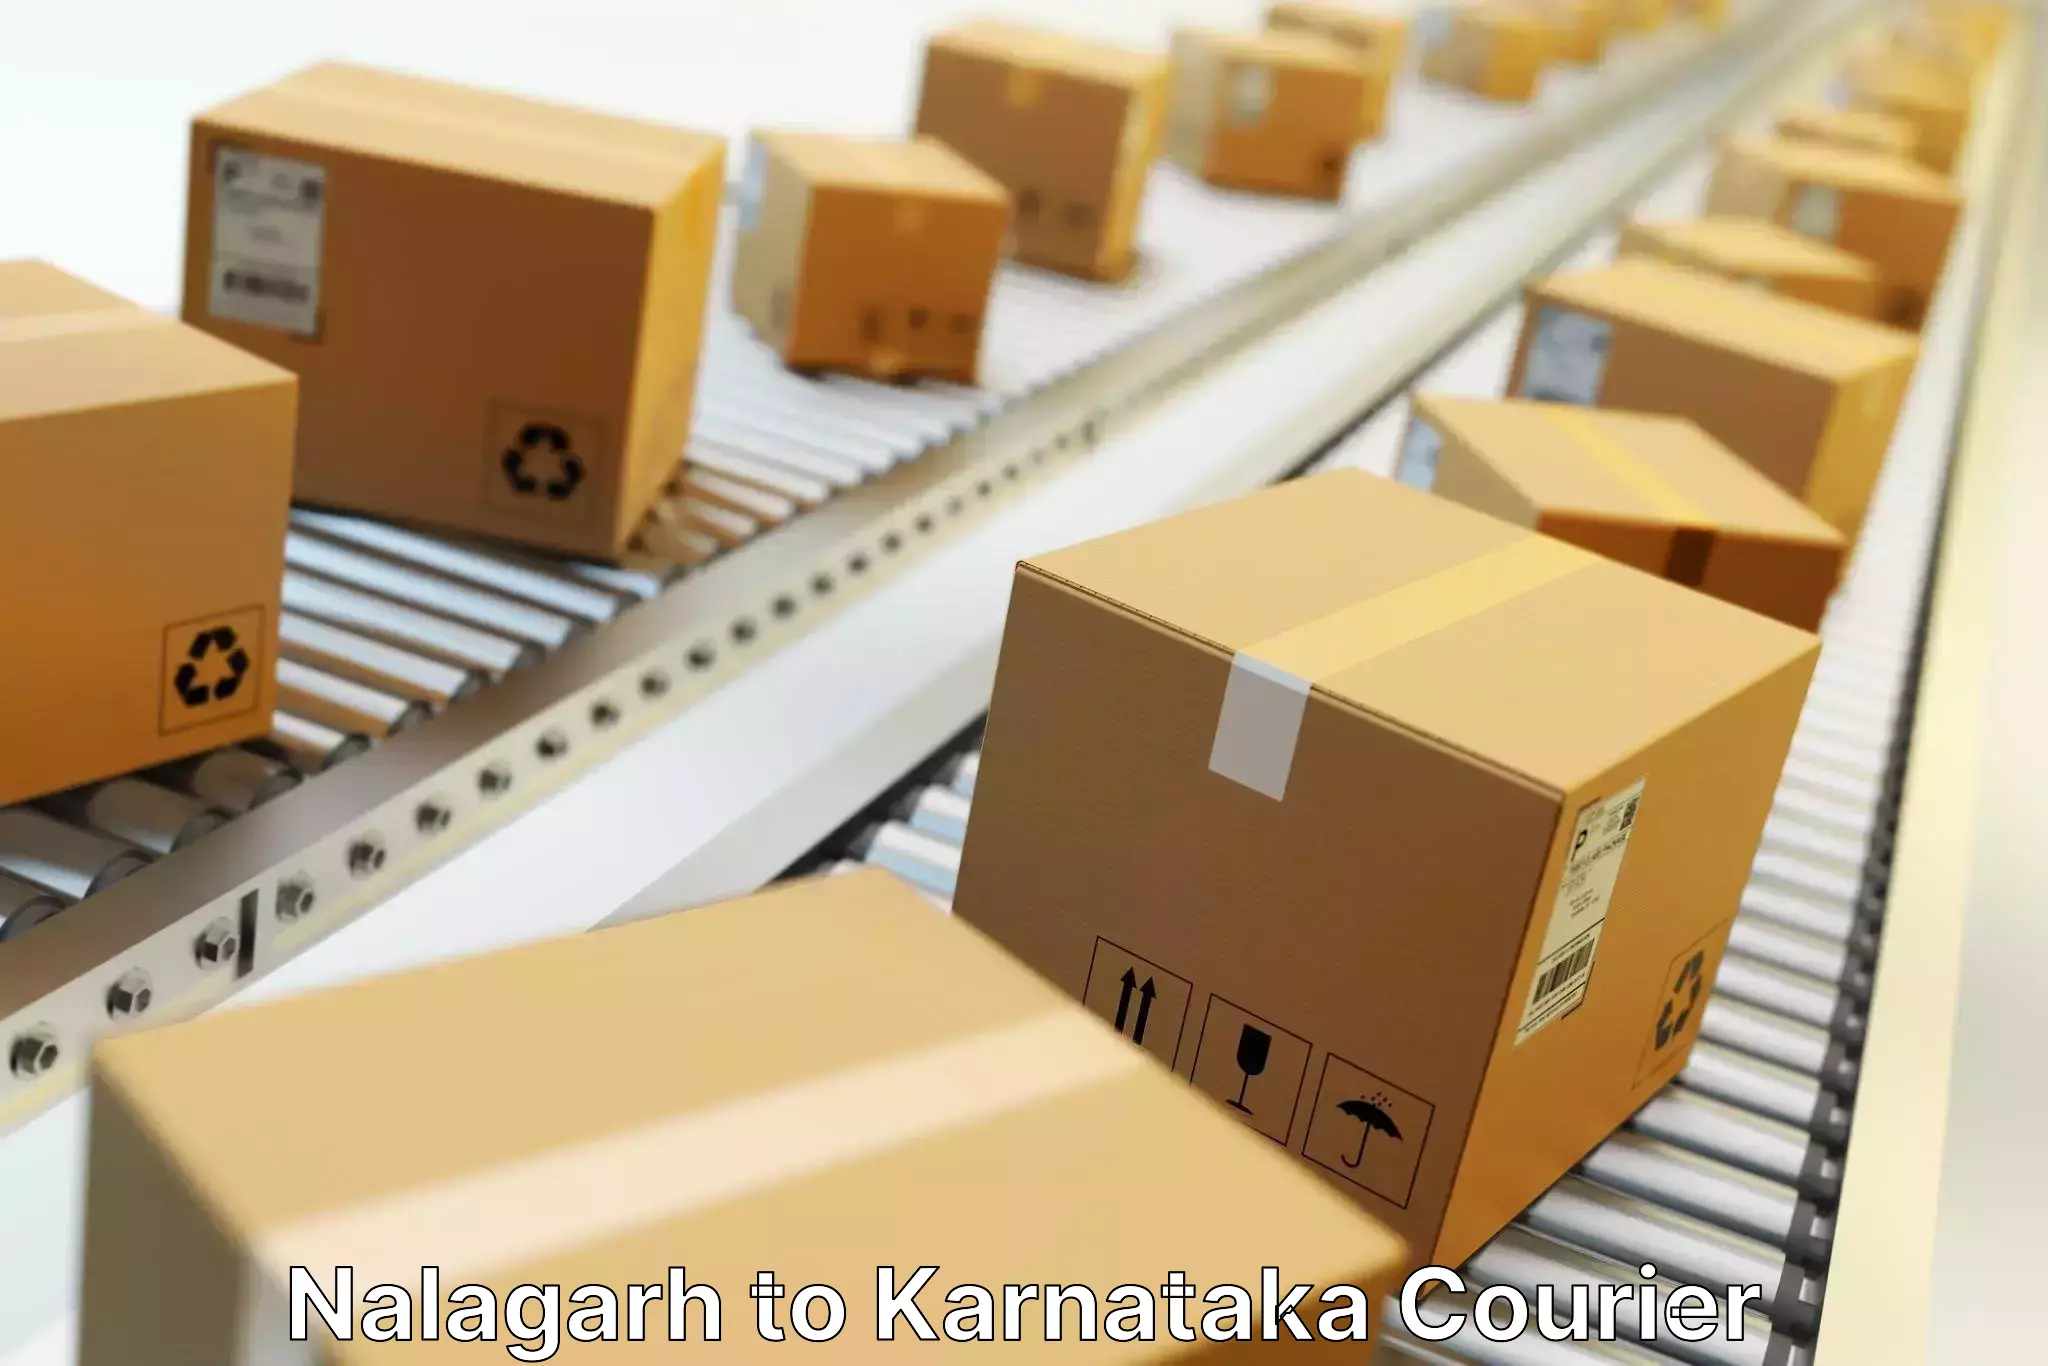 Holiday shipping services Nalagarh to Karnataka